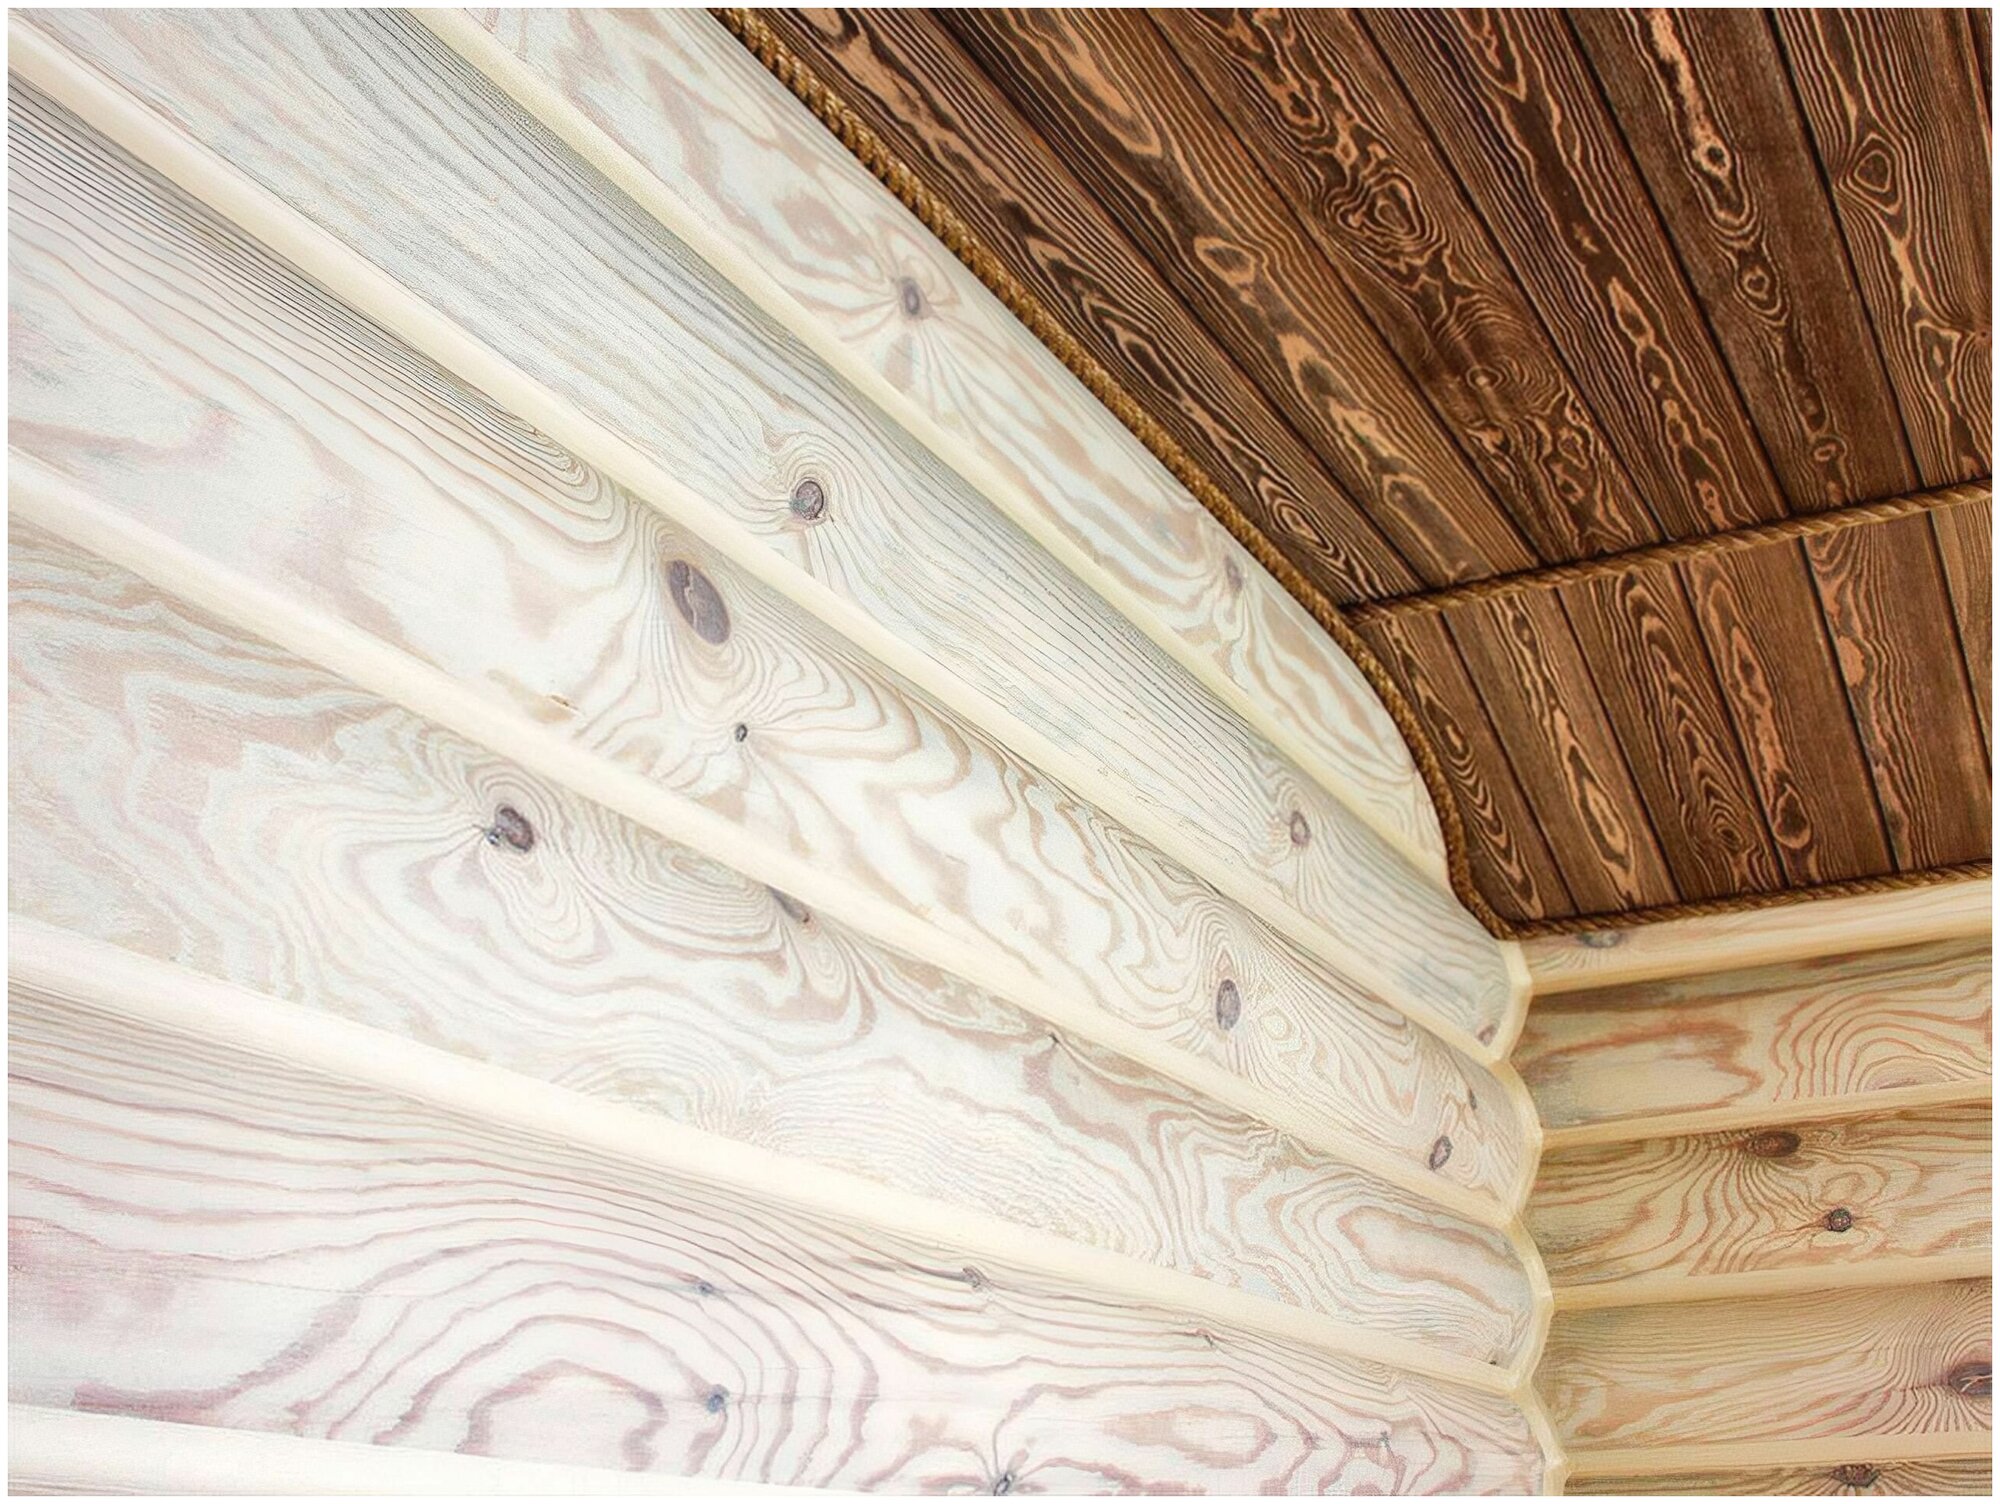 Масло для деревянных стен и потолков - предназначено для защиты и декорирования изделий их всех видов древесины, 1 л, цвет белый. Обеспечивает защиту